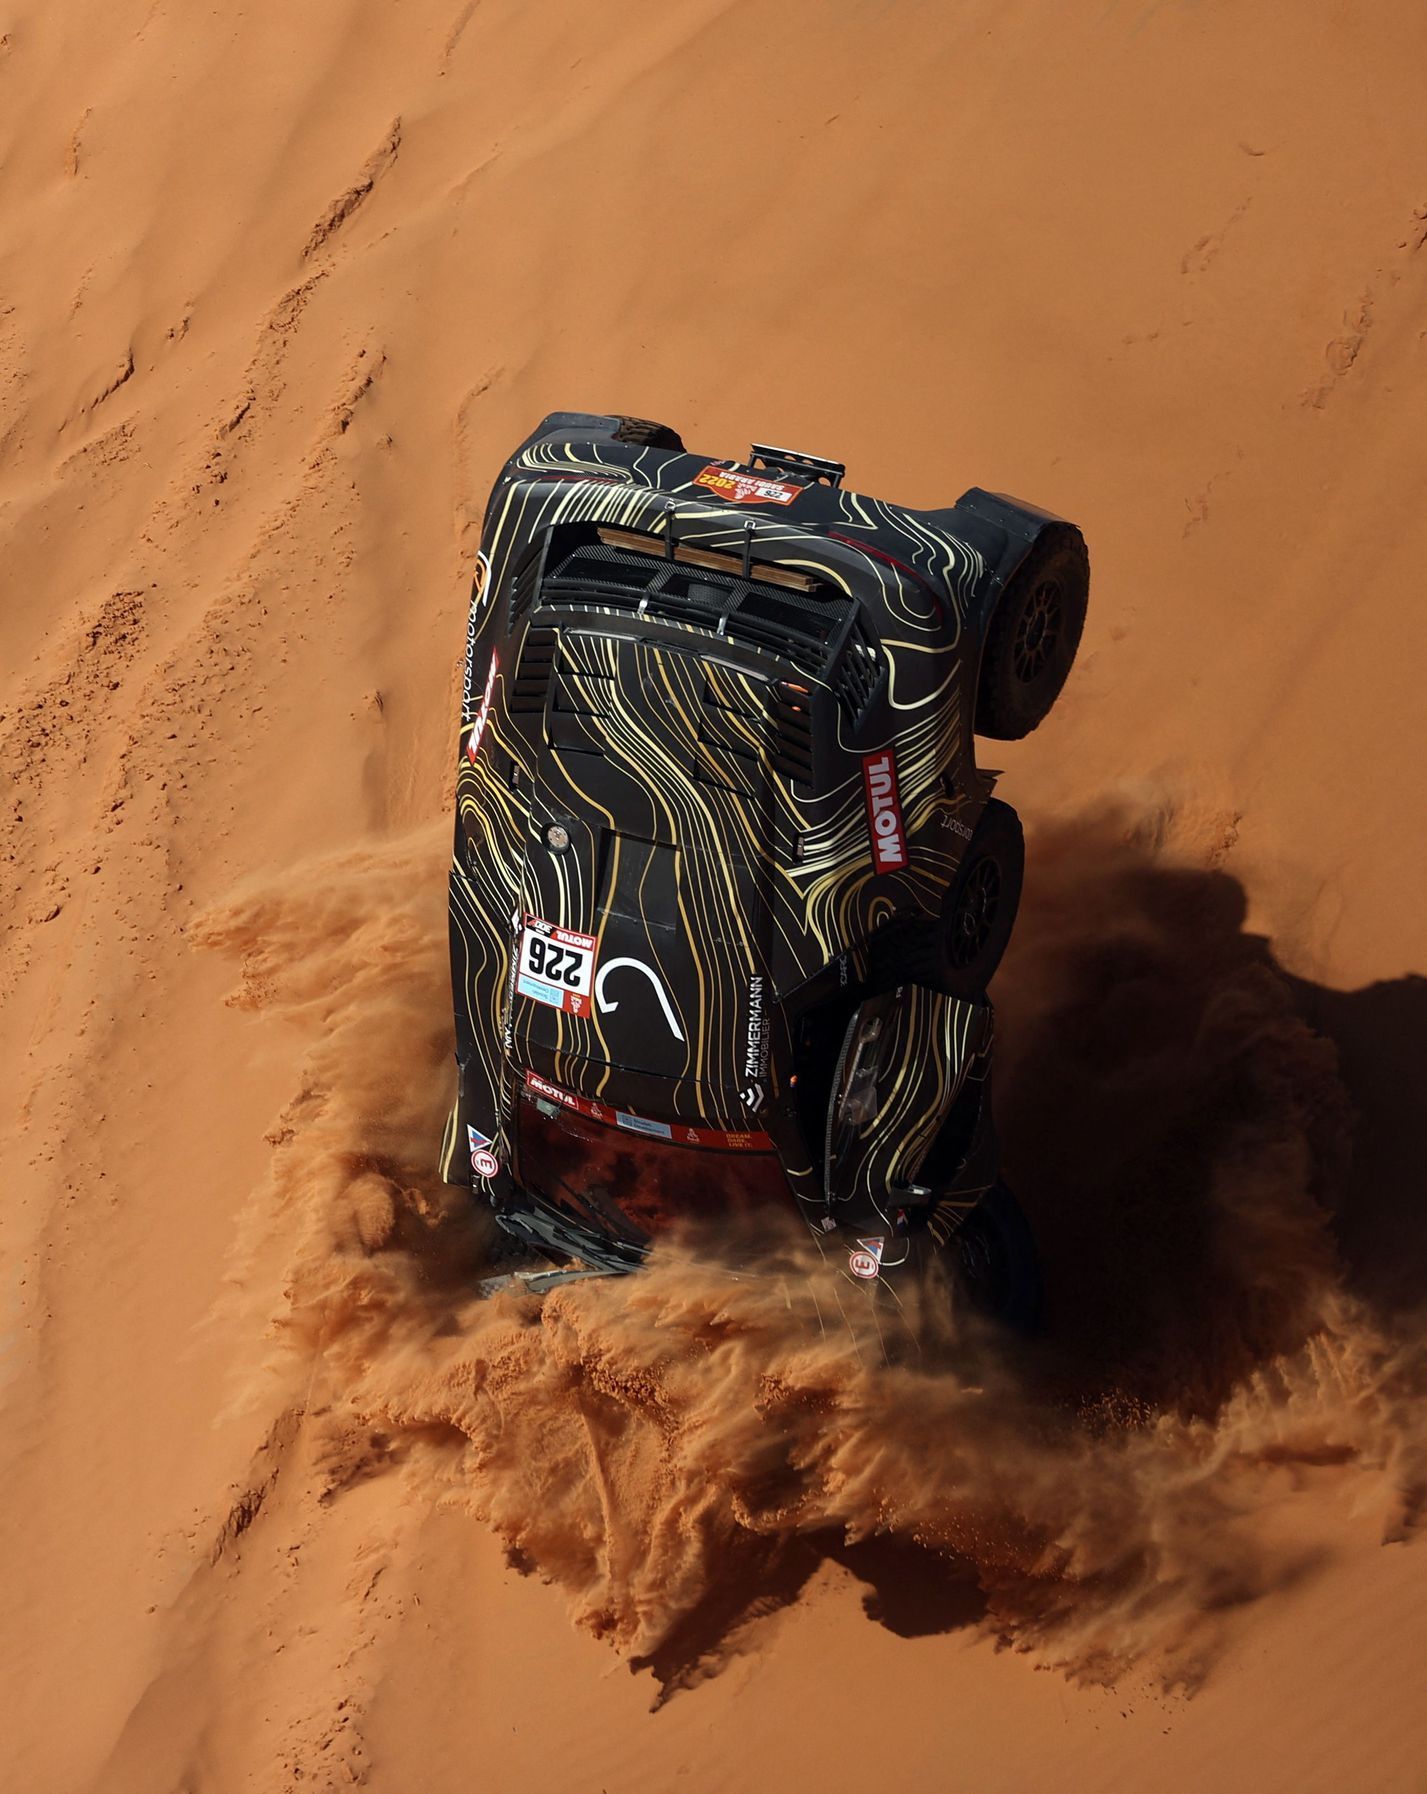 Guerlain Chicherit, Buggy GCK- nehoda na Rallye Dakar 2022